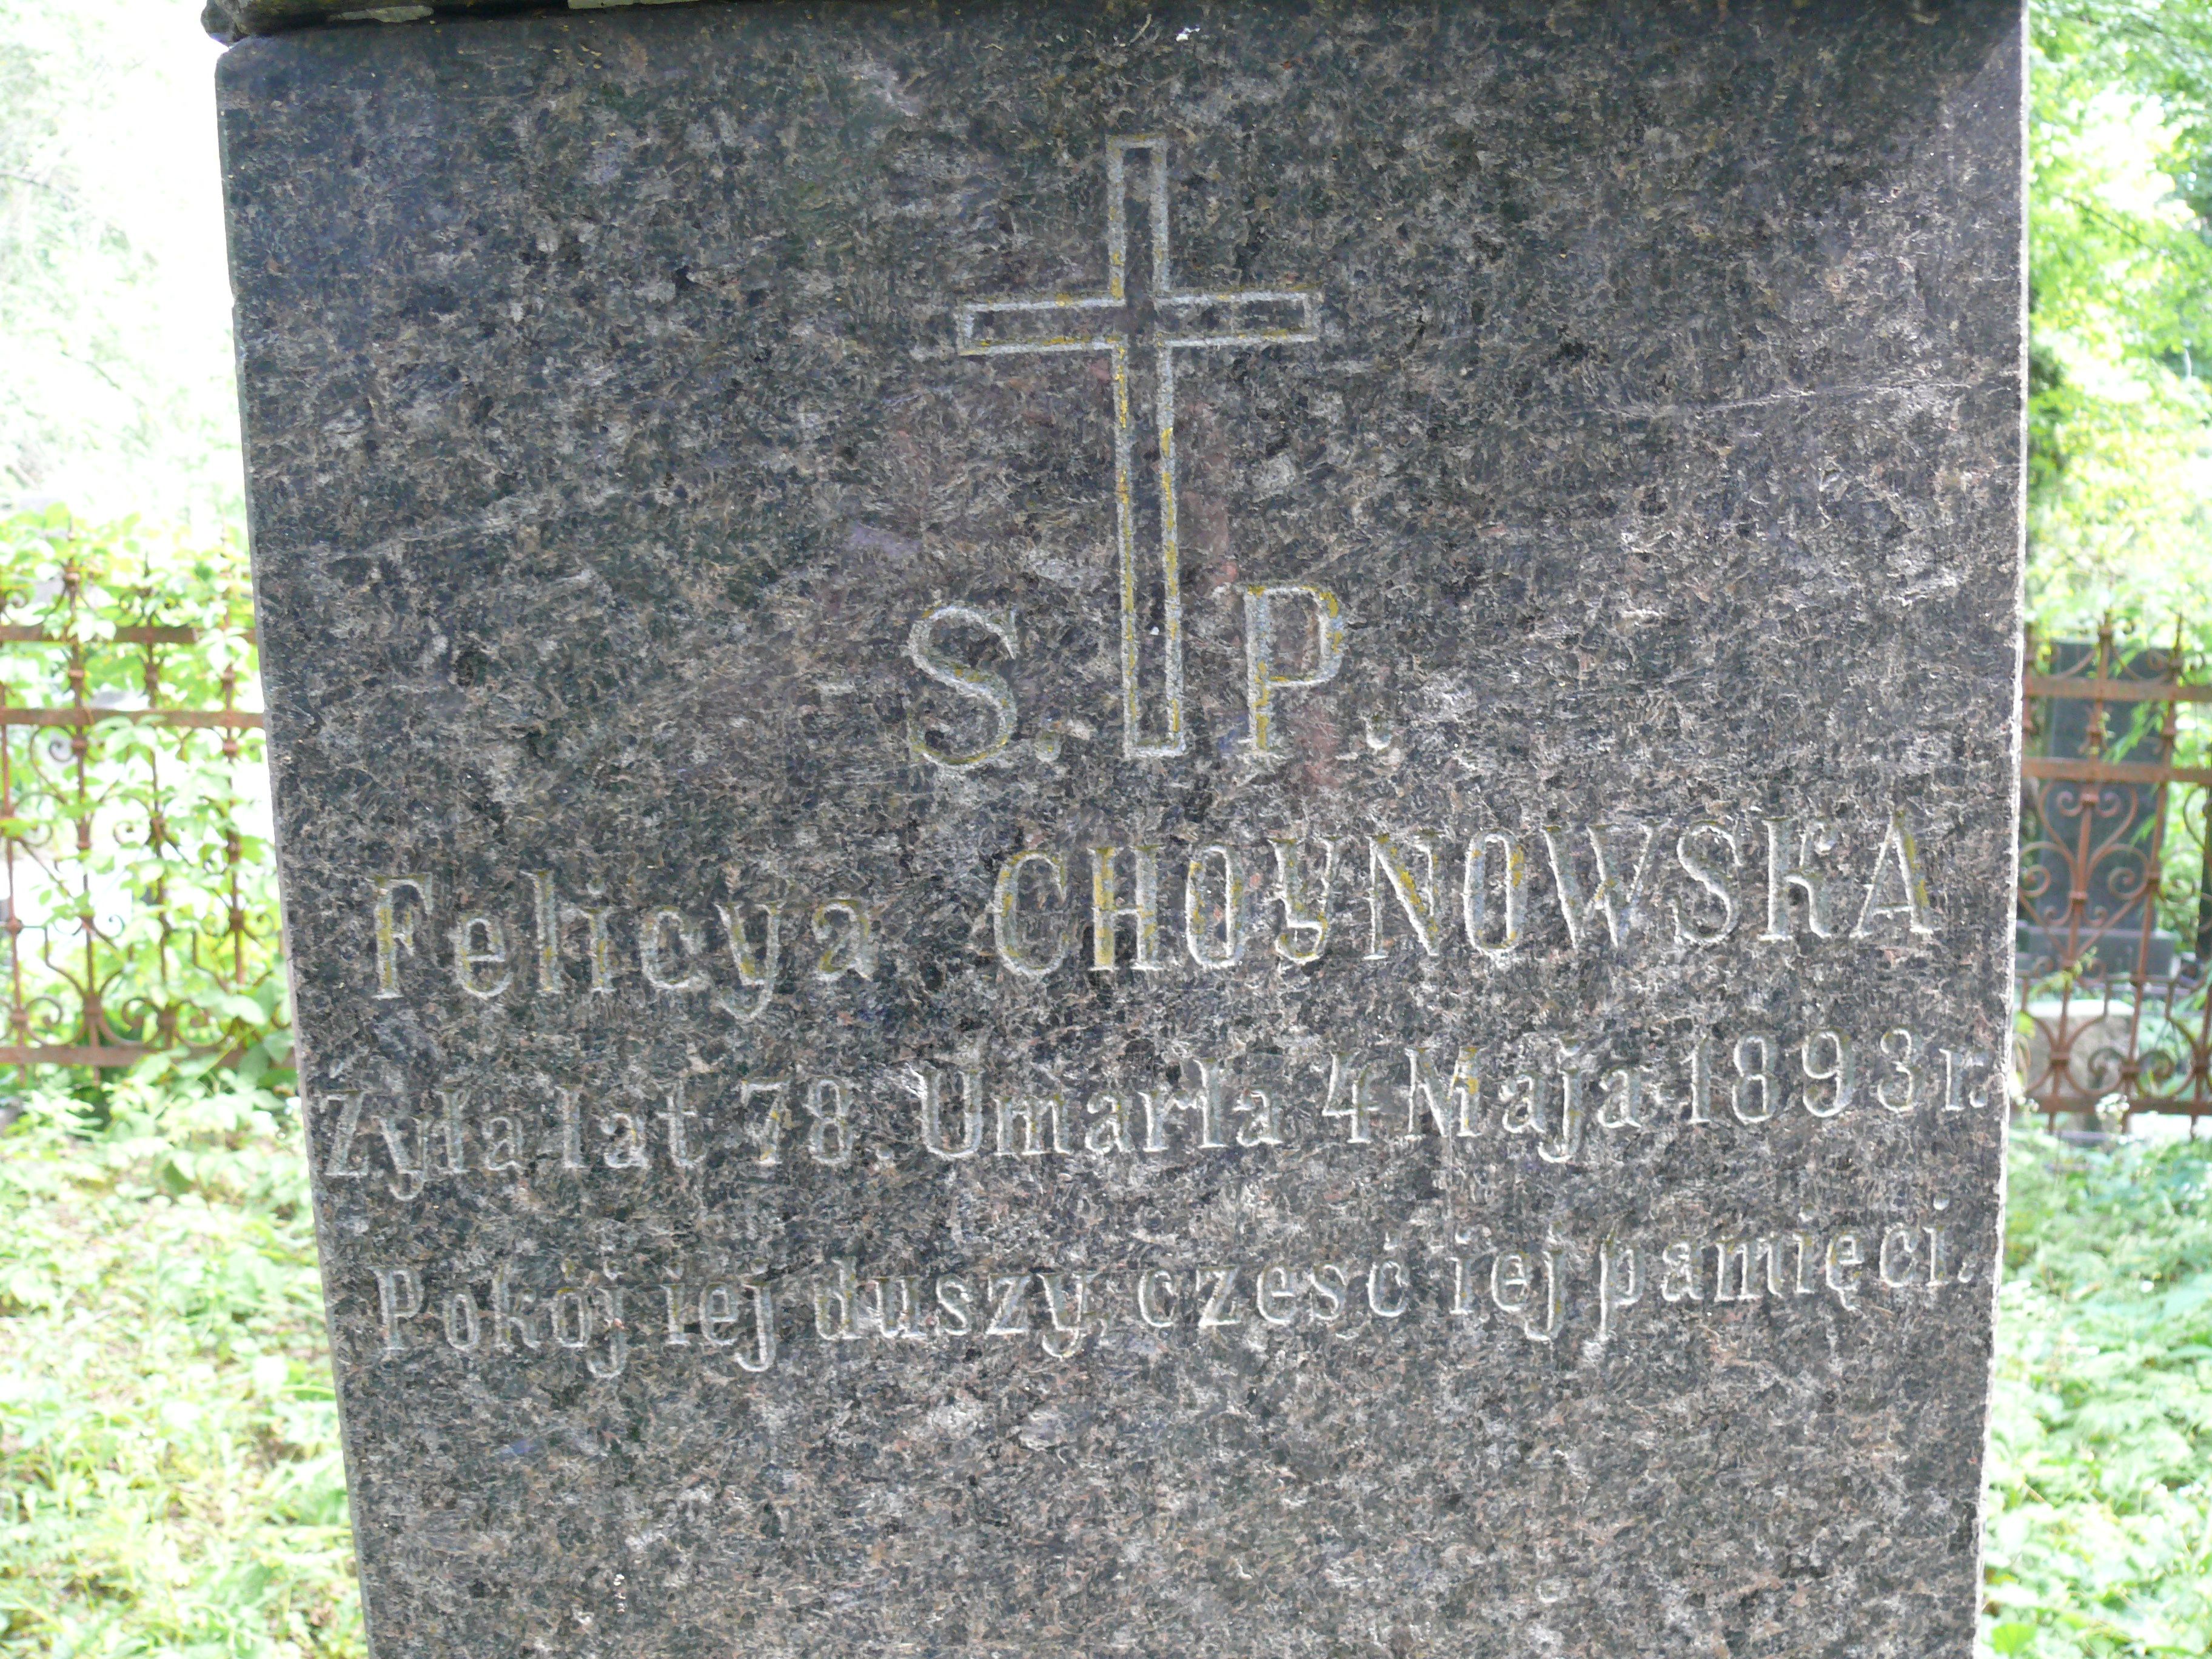 Inscription from the tombstone of Felicja and Józef Choynowski and Walenty Wielhorski